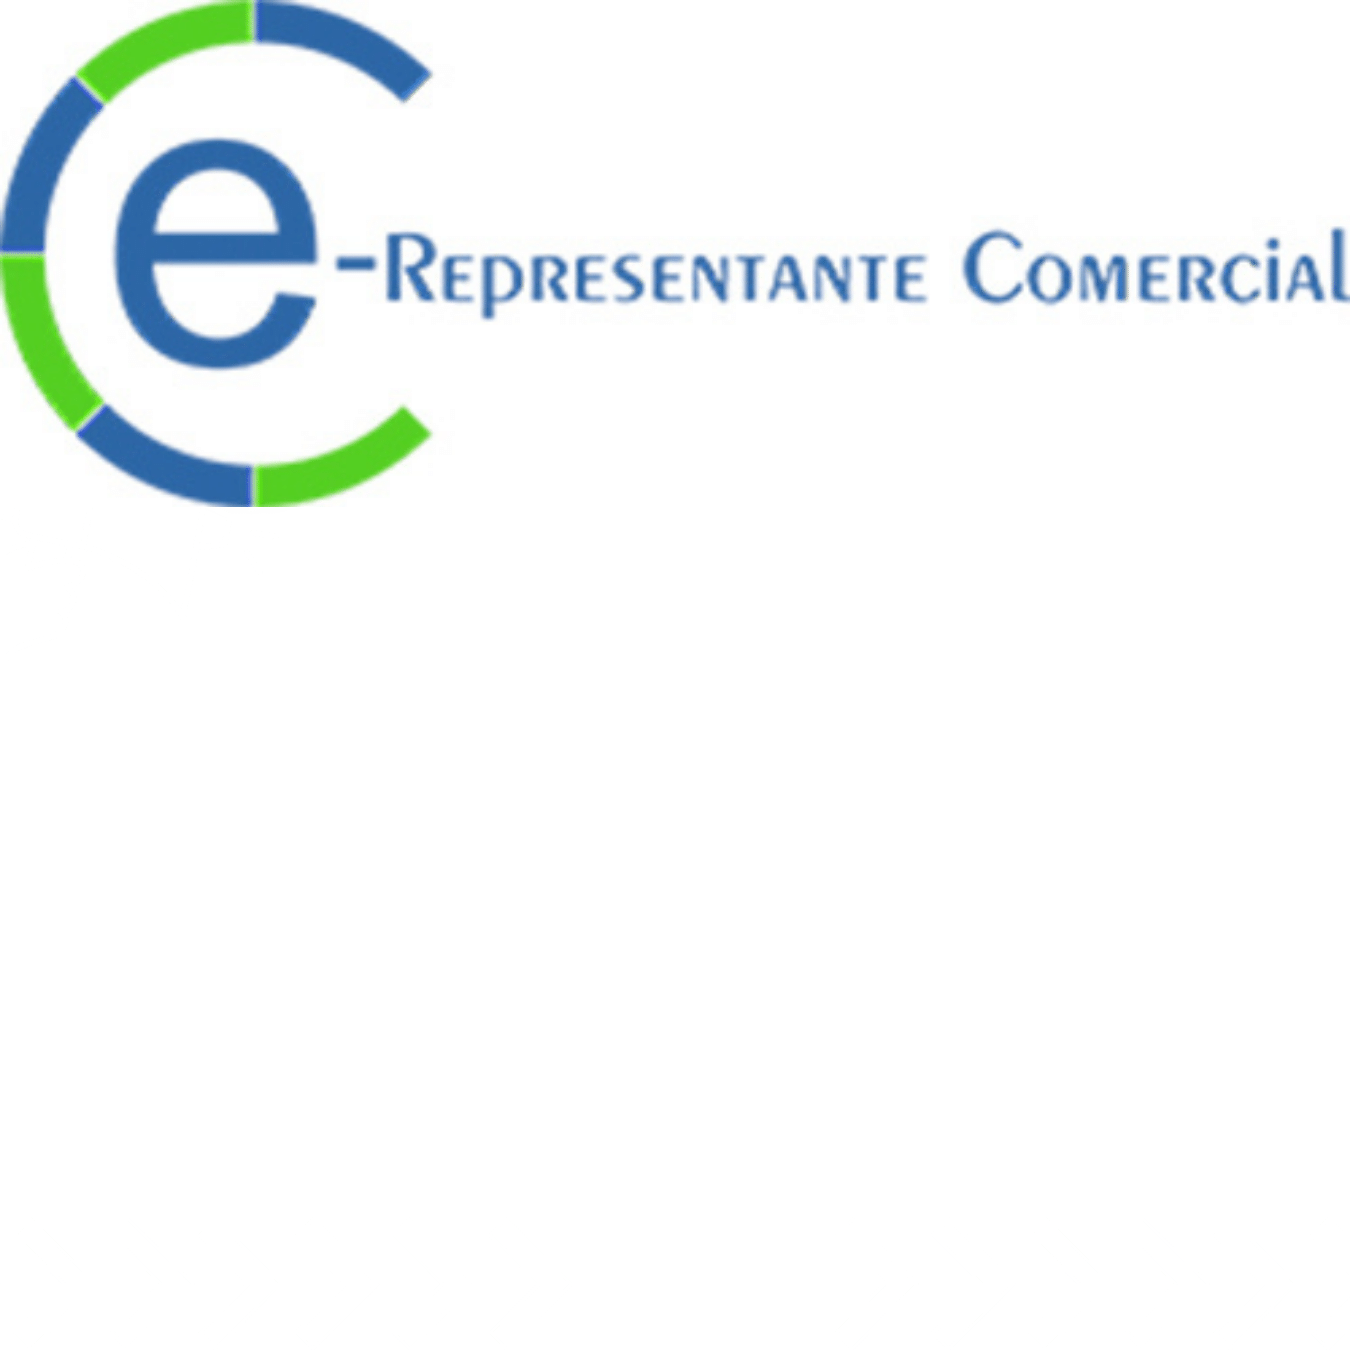 E-Representante Comercial - Representantes Comerciais e vendas